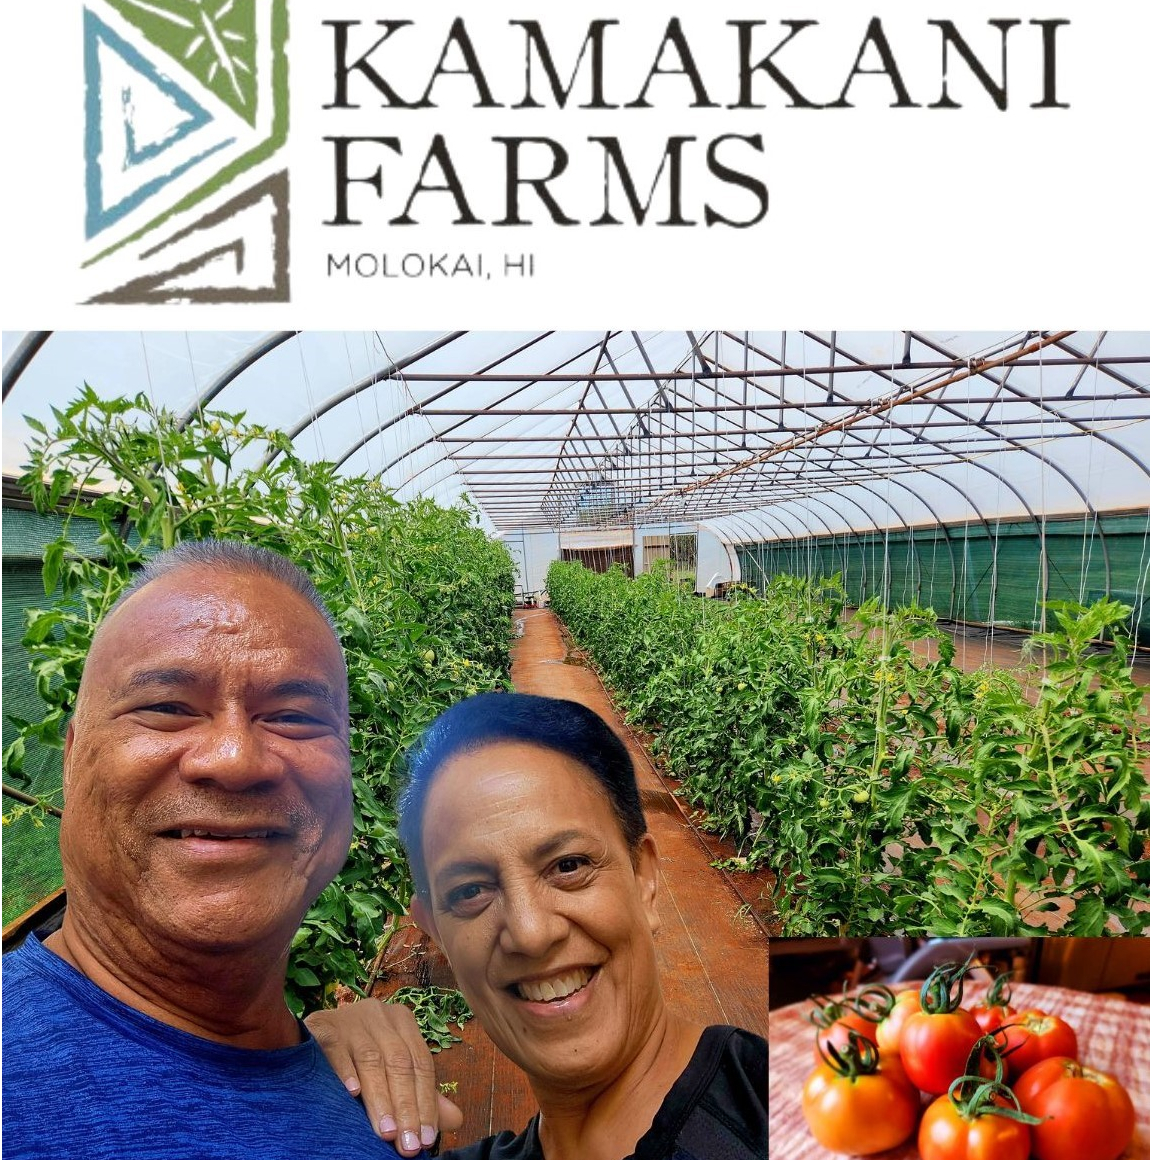 Kamakani Farms